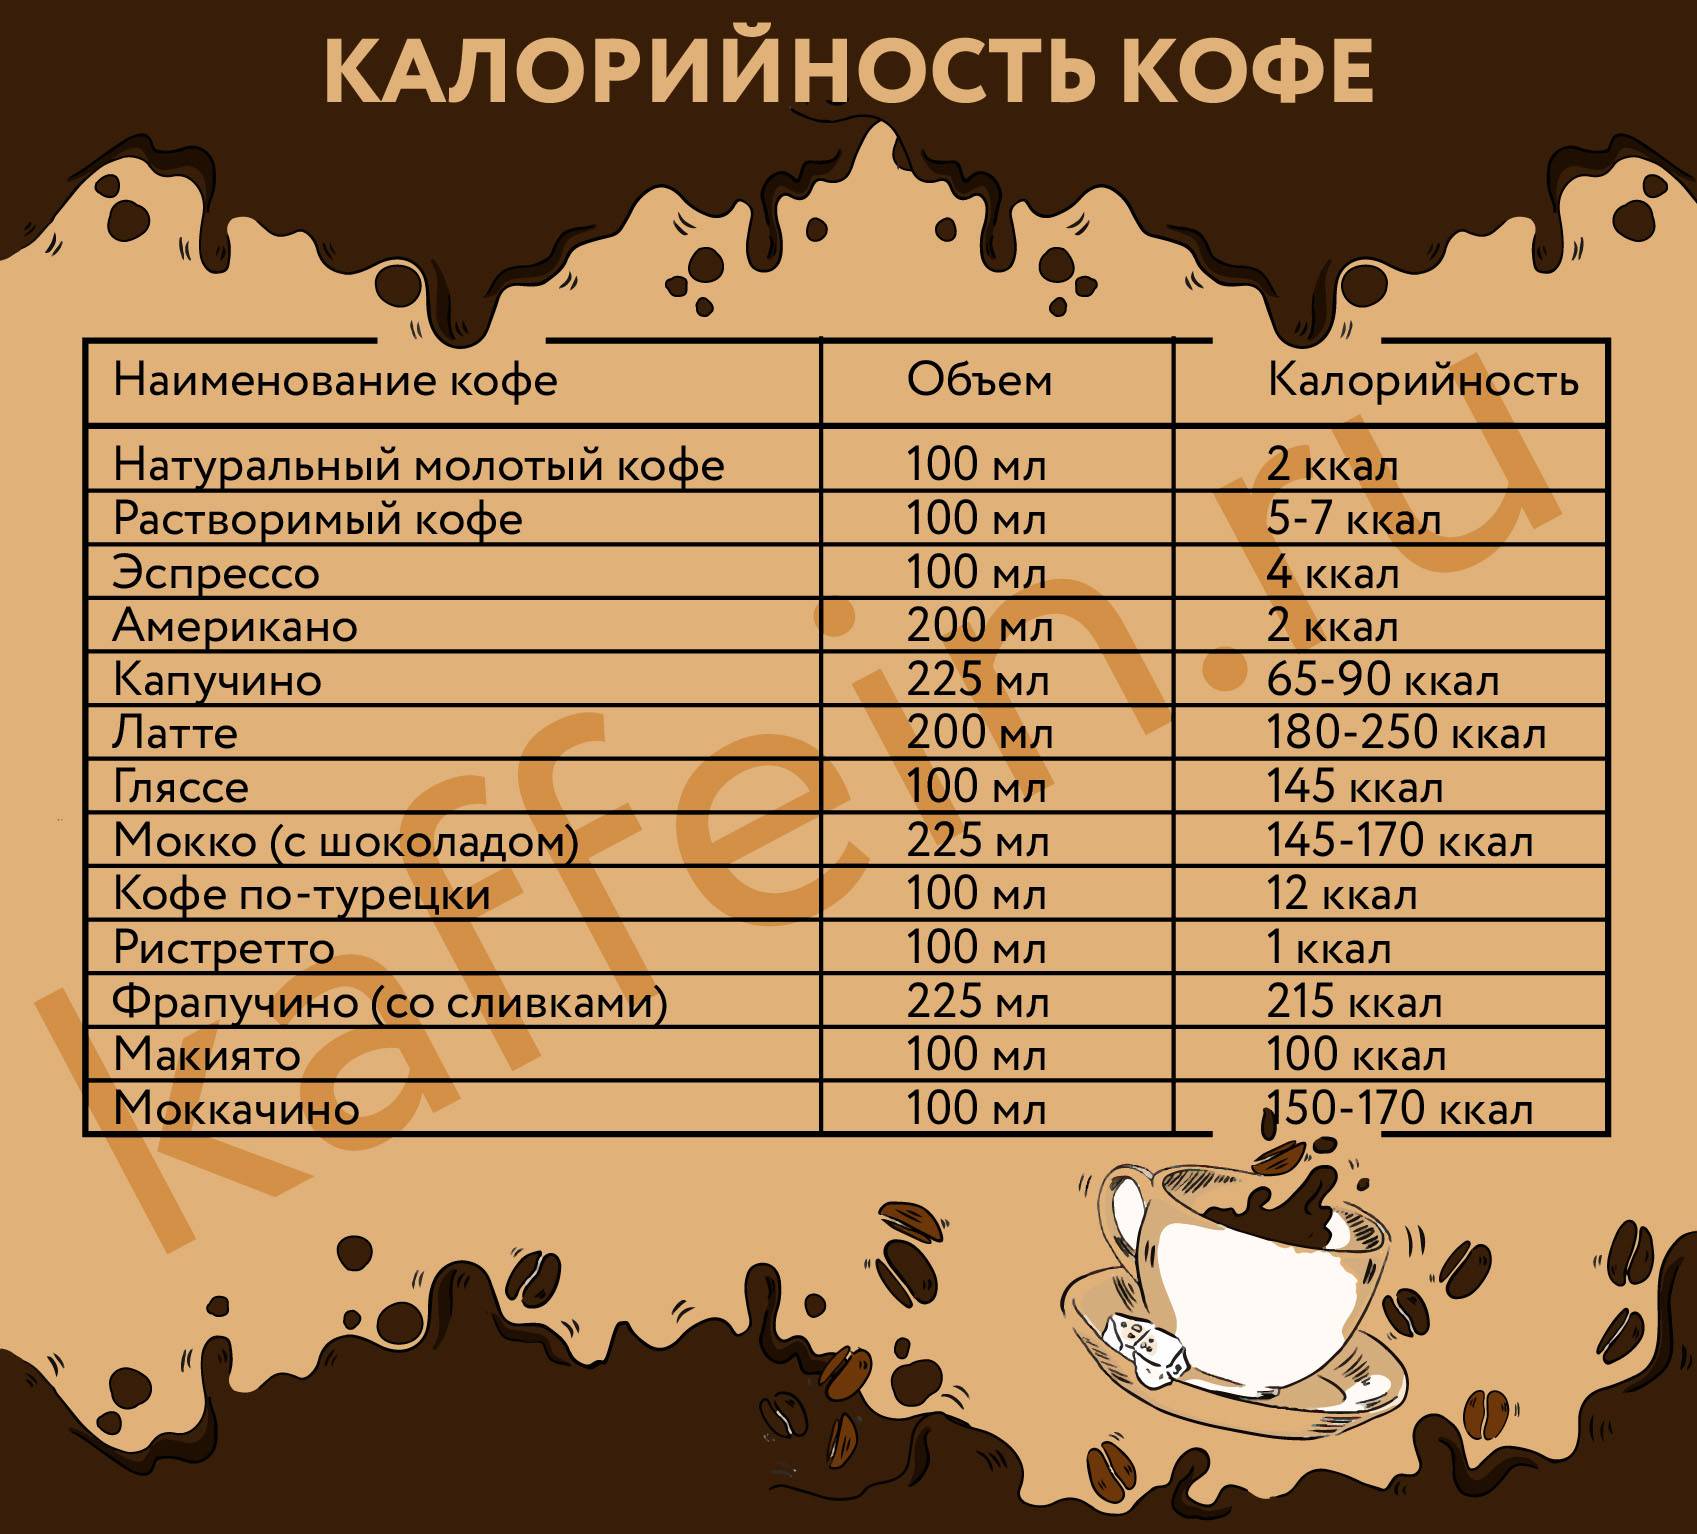 Калорийность кофе с сахаром и без, растворимого и натурального, сколько ккал в чашке